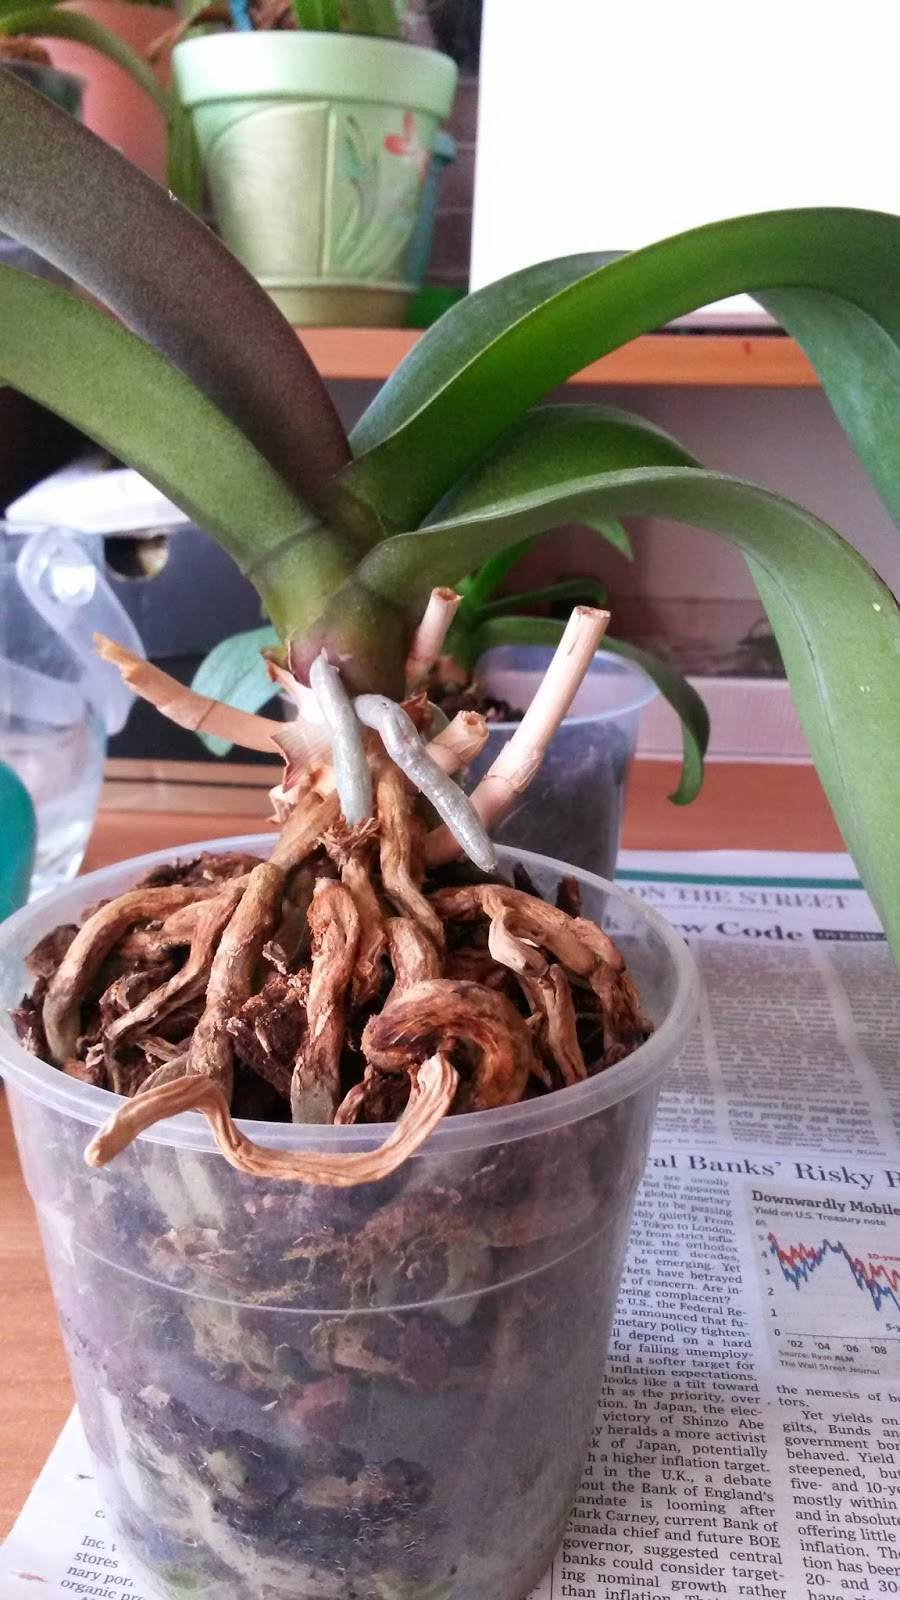 Когда пересаживать орхидею правильно в домашних условиях